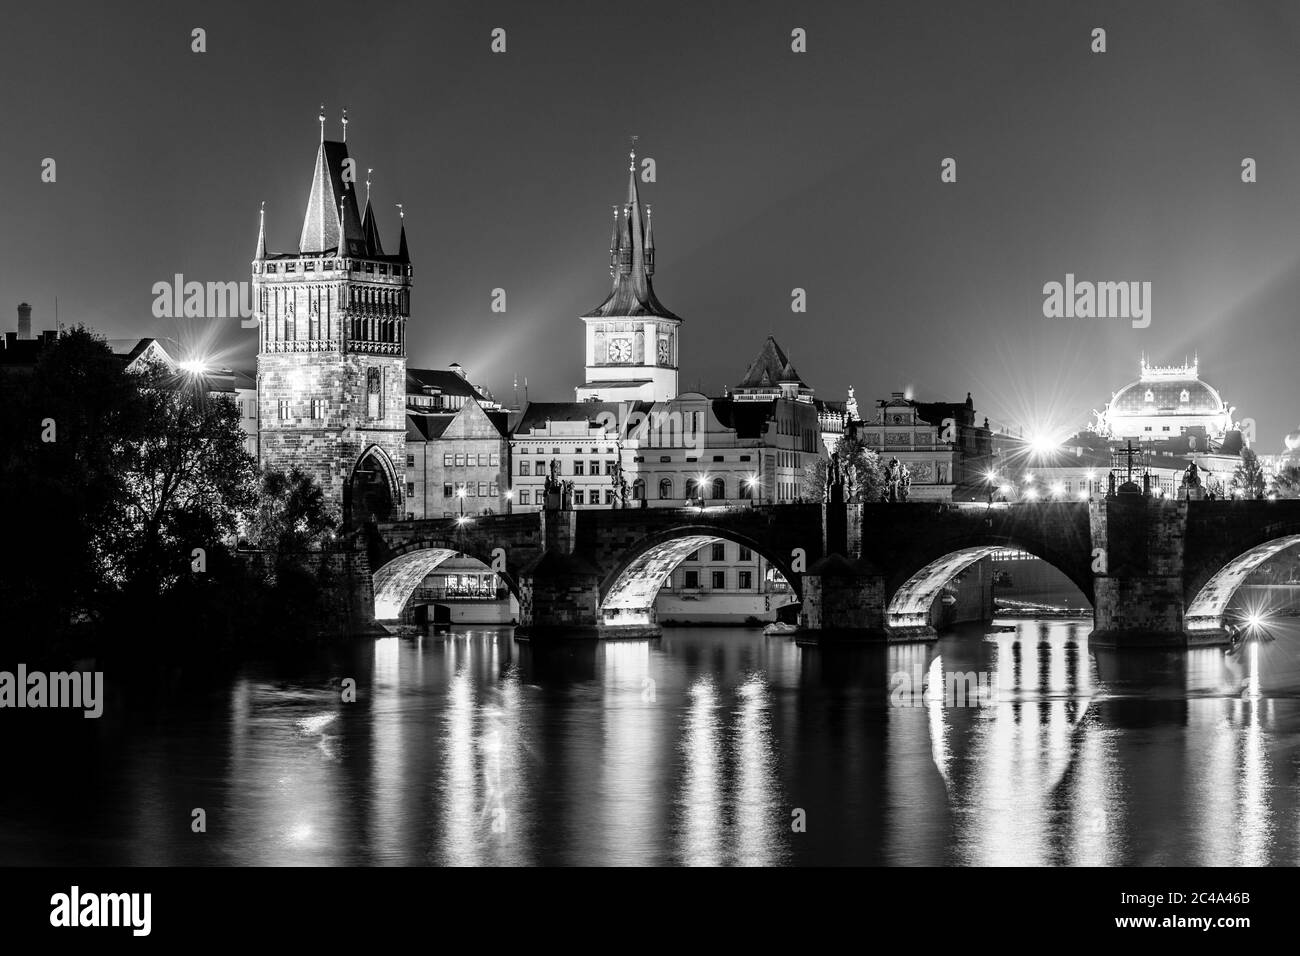 Moldava River e Ponte Carlo con la Torre del Ponte della Citta' Vecchia di notte, Praga, Cechi. Sito patrimonio dell'umanità dell'UNESCO. Immagine in bianco e nero. Foto Stock